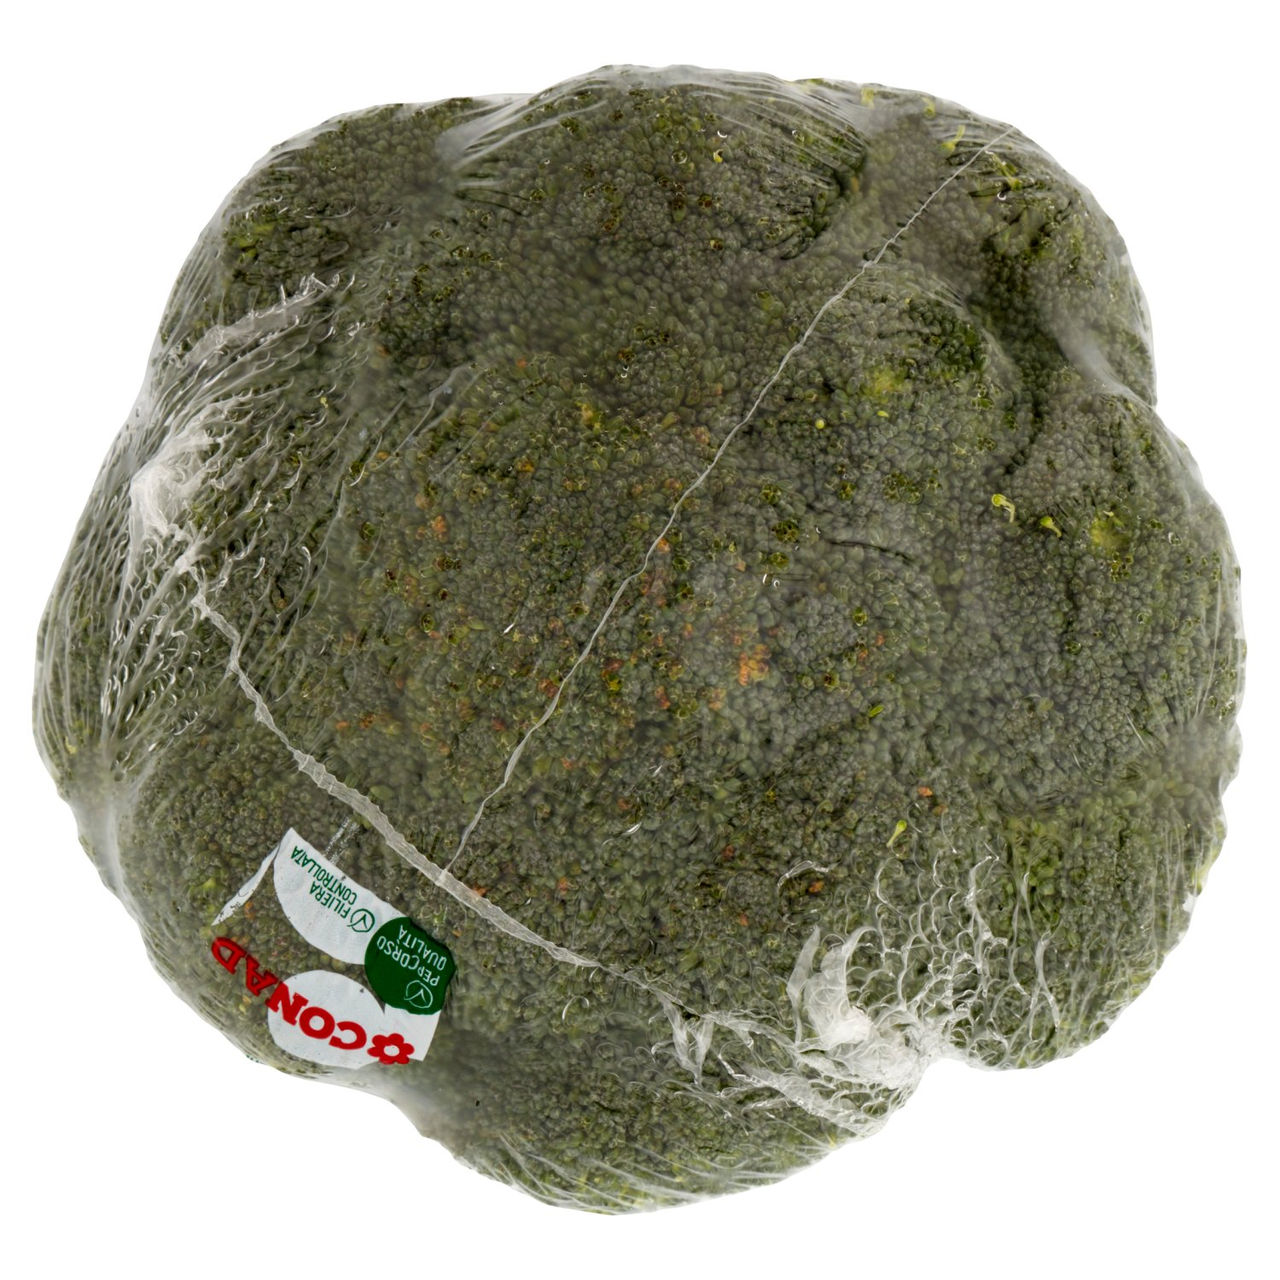 CONAD Percorso Qualità Cavolo di Broccolo Italia Cal.: Diam. testa > di 6 Cm 500 g